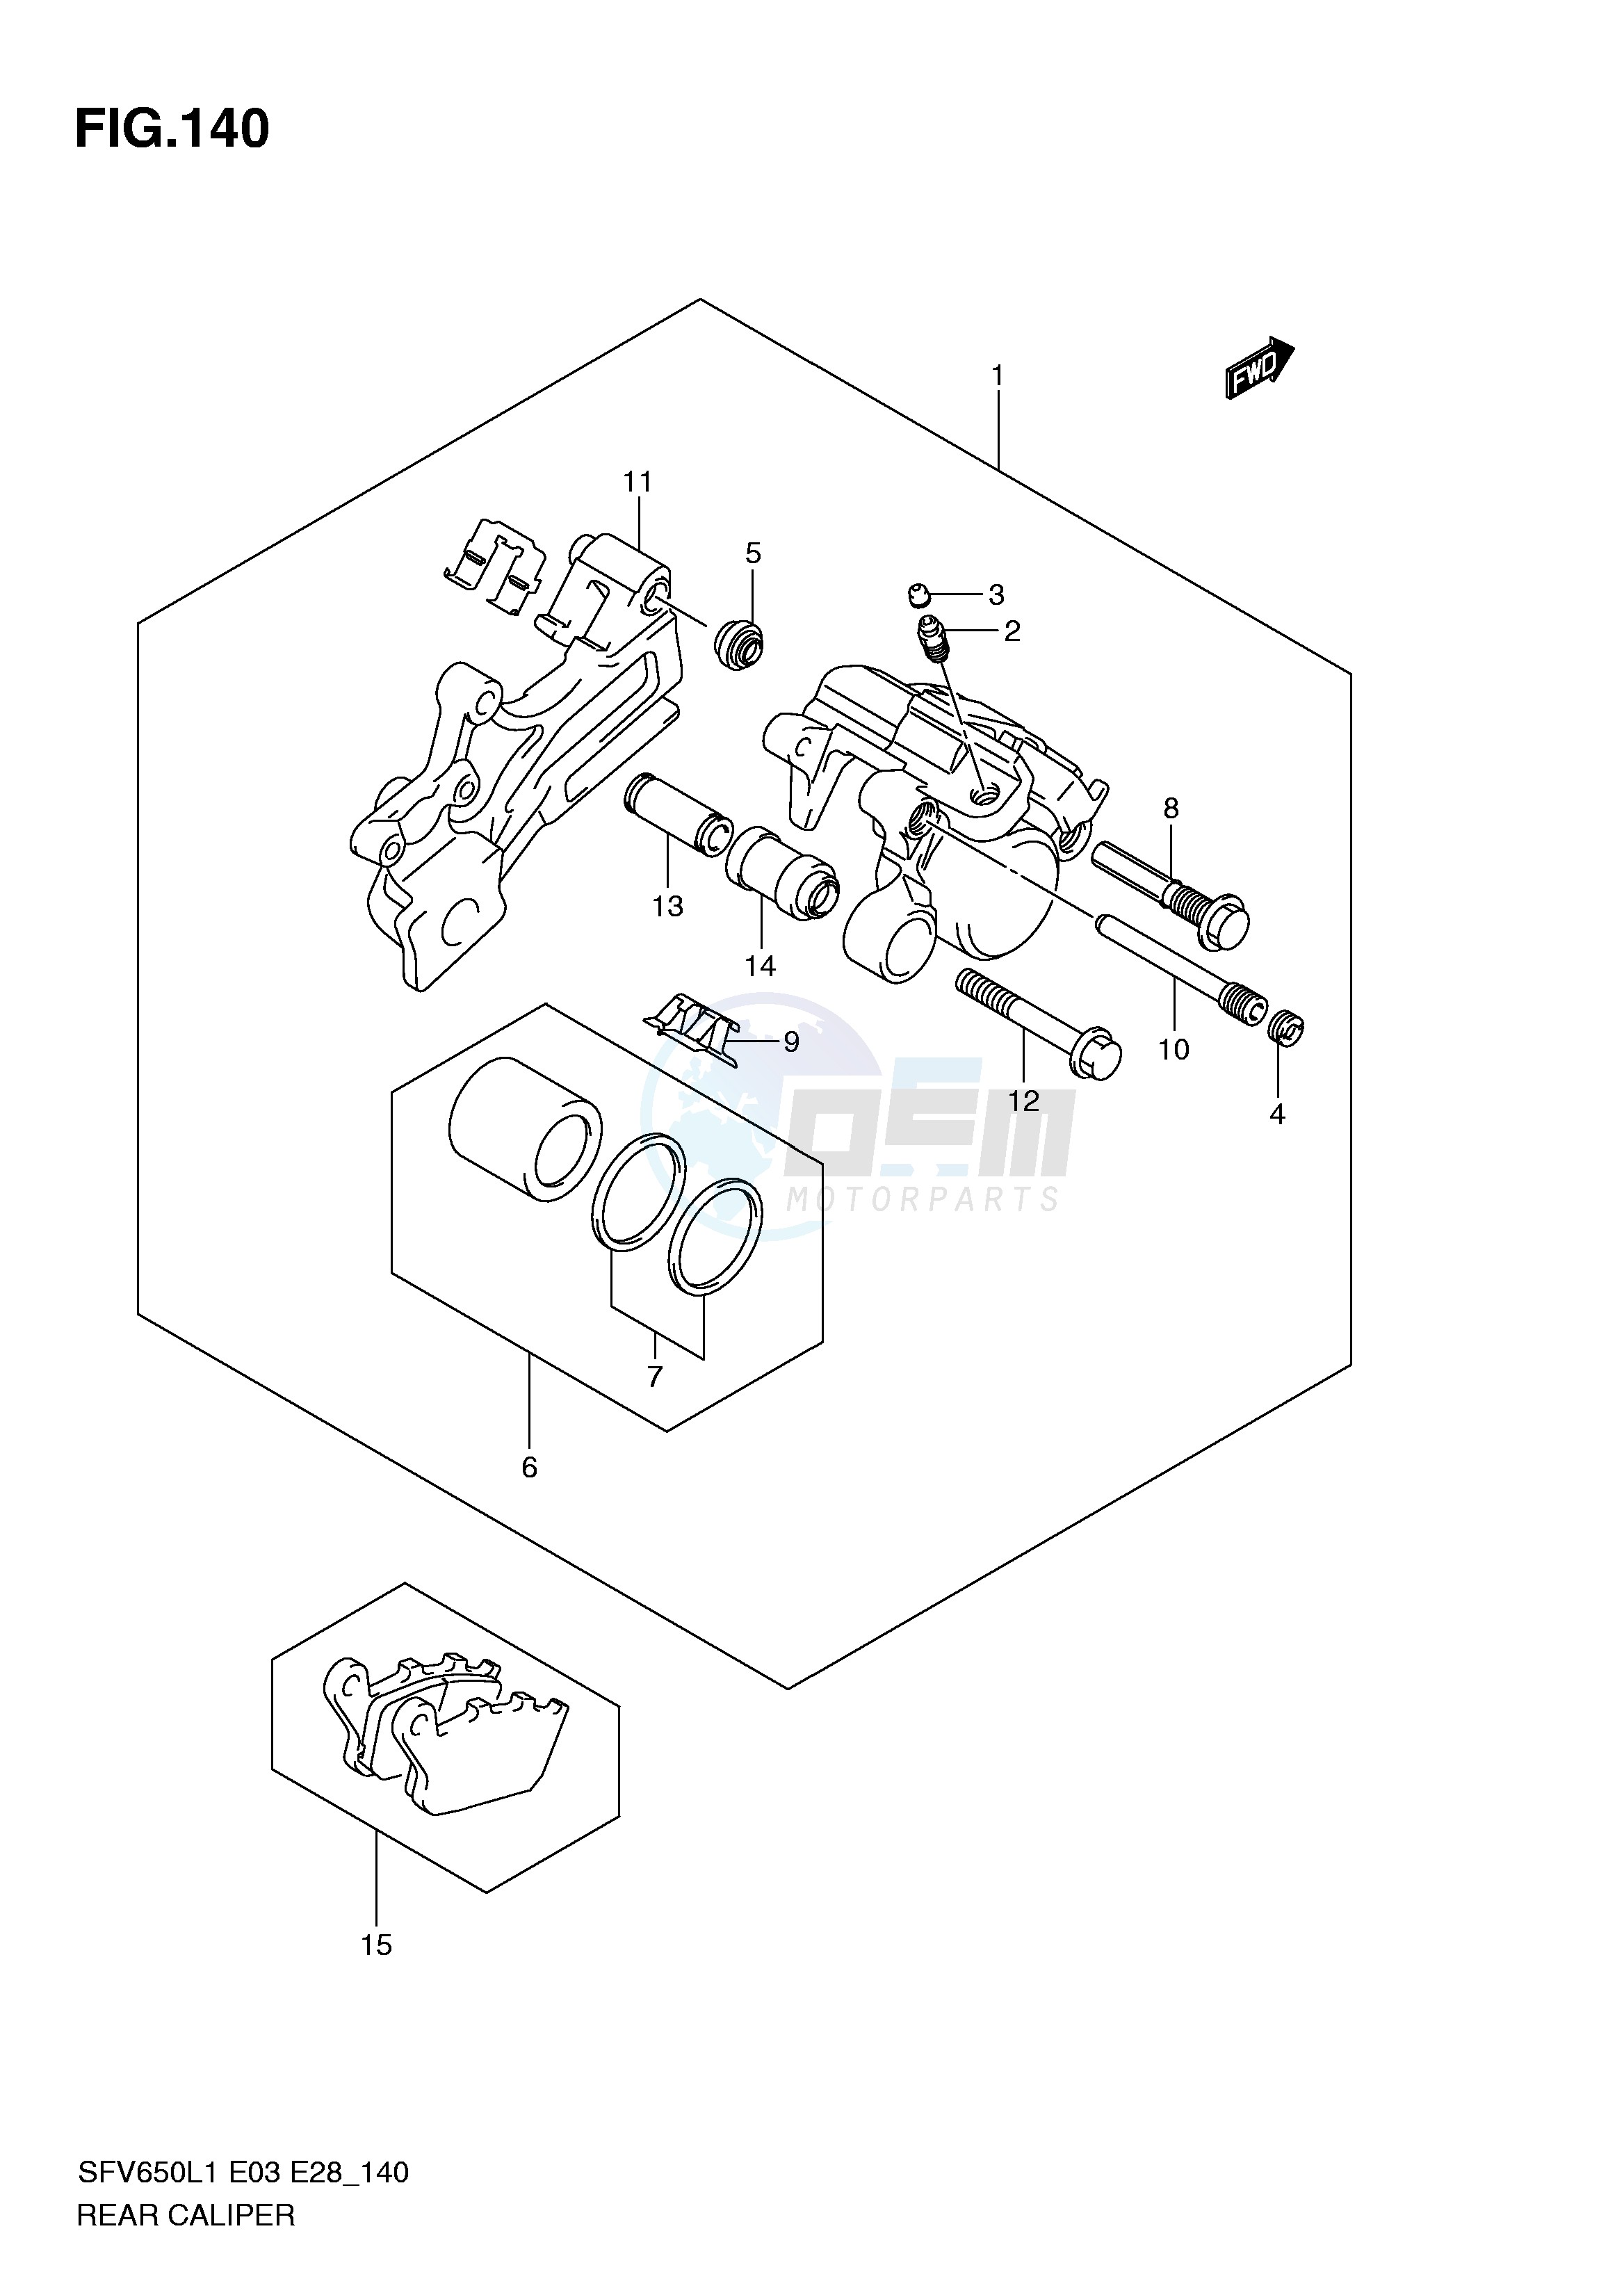 REAR CALIPER (SFV650L1 E33) blueprint